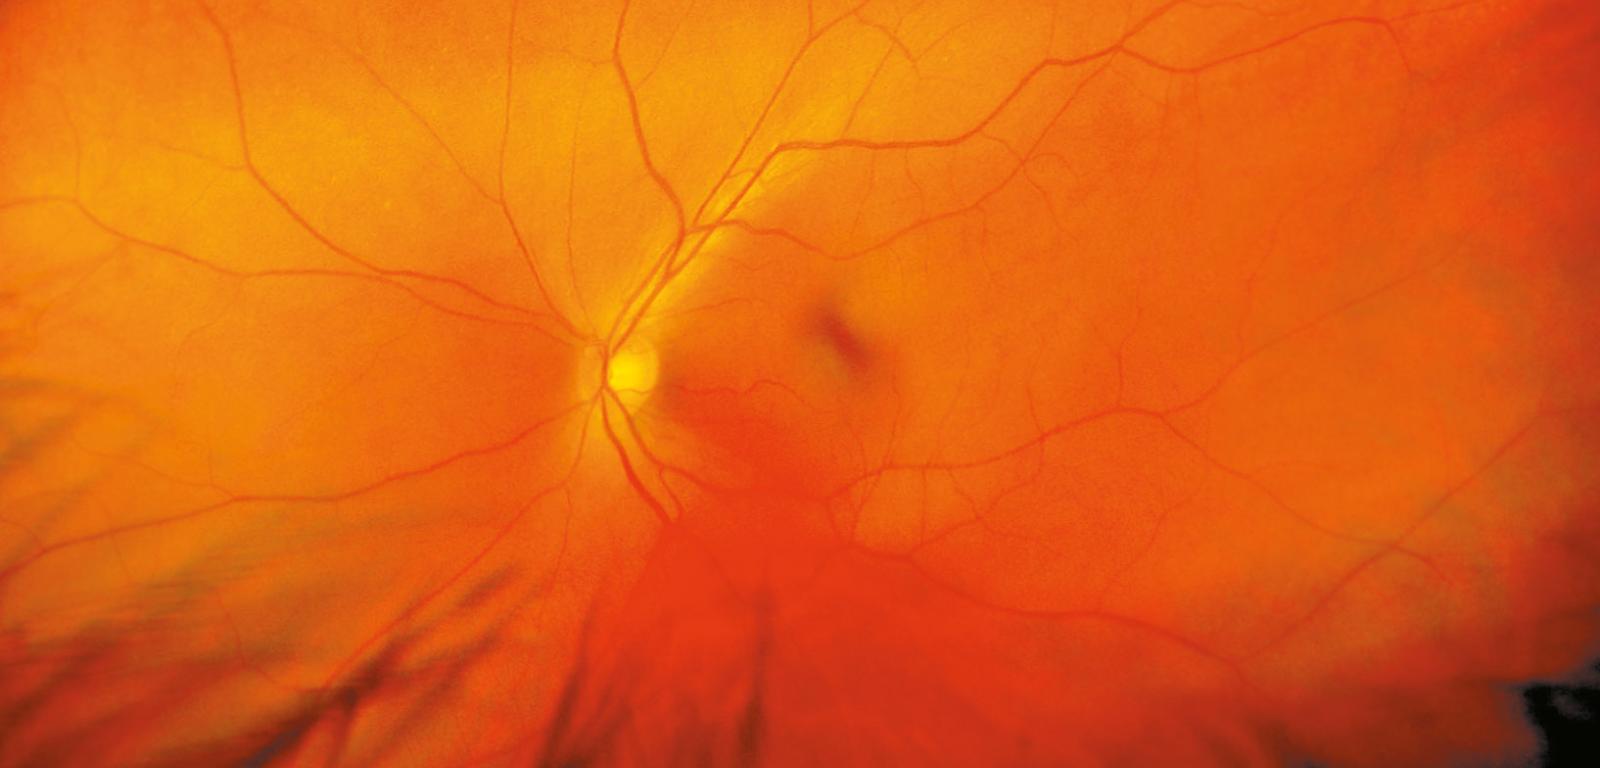 Siatkówka ludzkiego oka w powiększeniu.